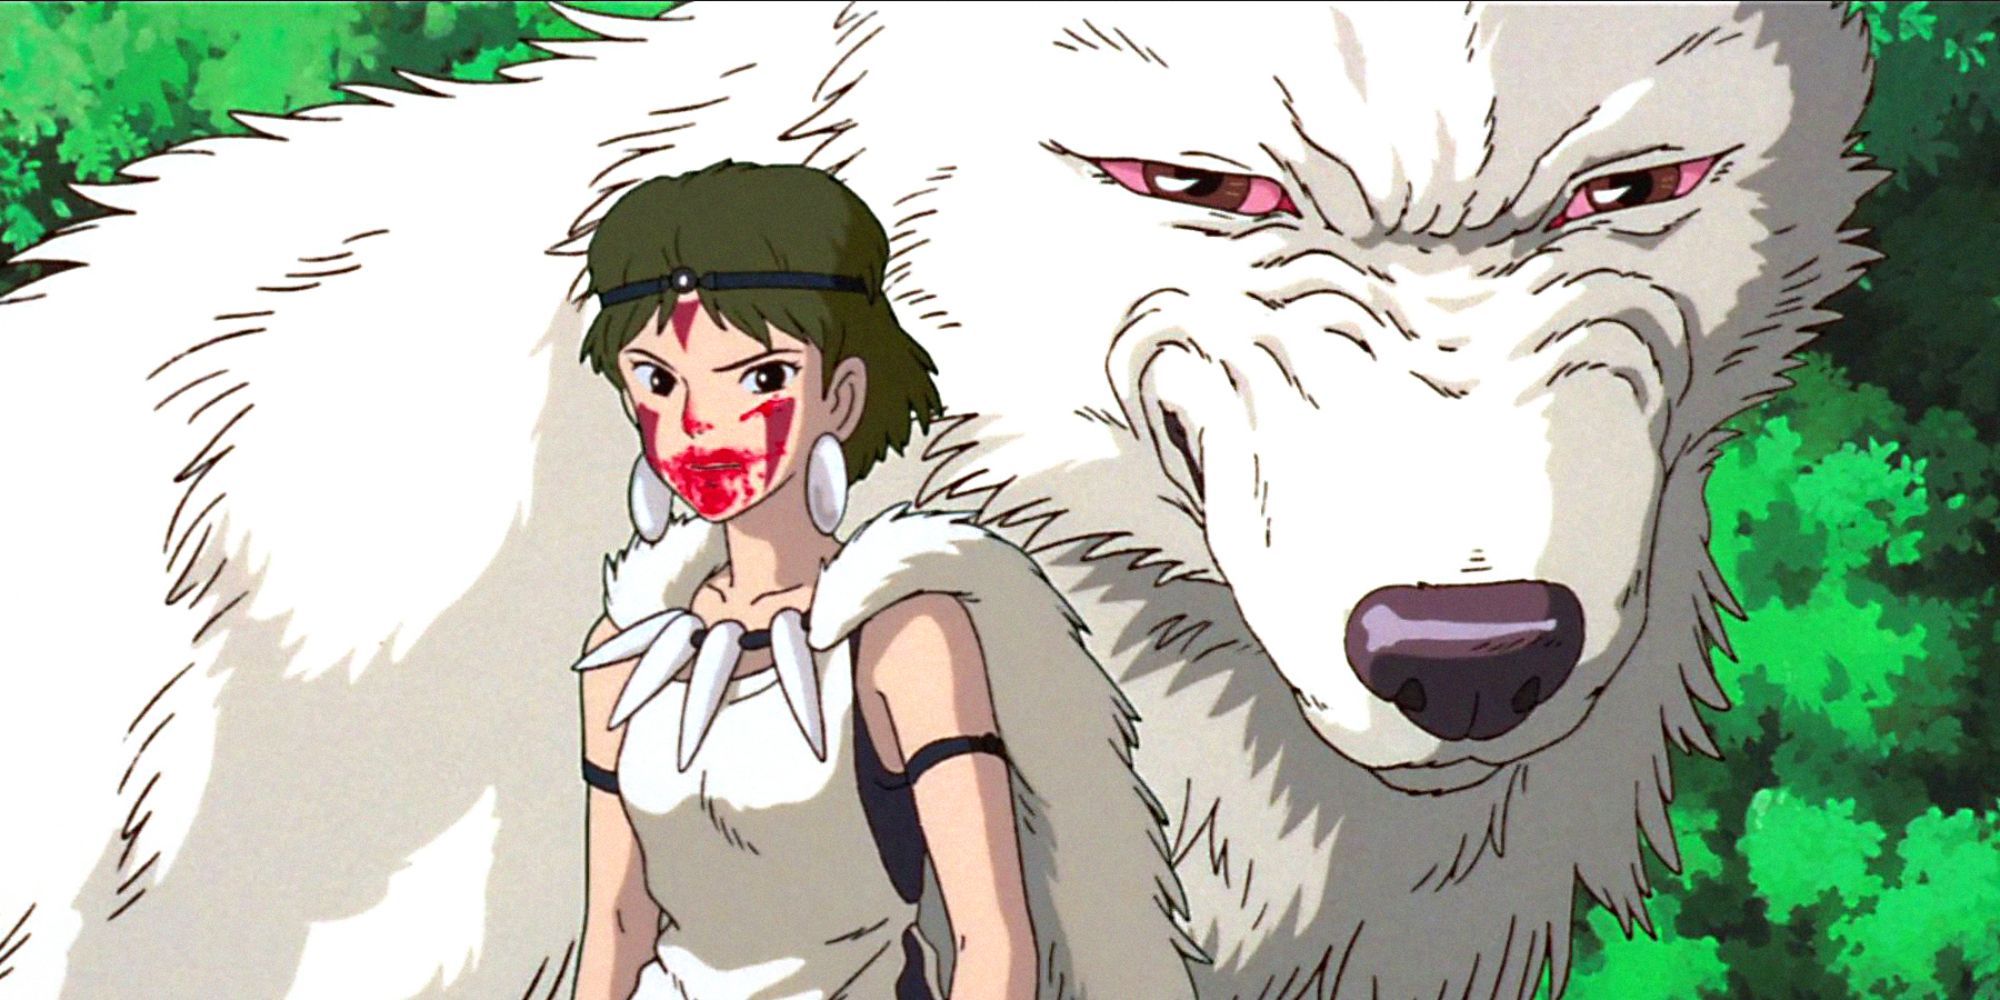 San (también conocida como Princesa Mononoke) y su amigo lobo de la película Princess Mononoke de Studio Ghibli